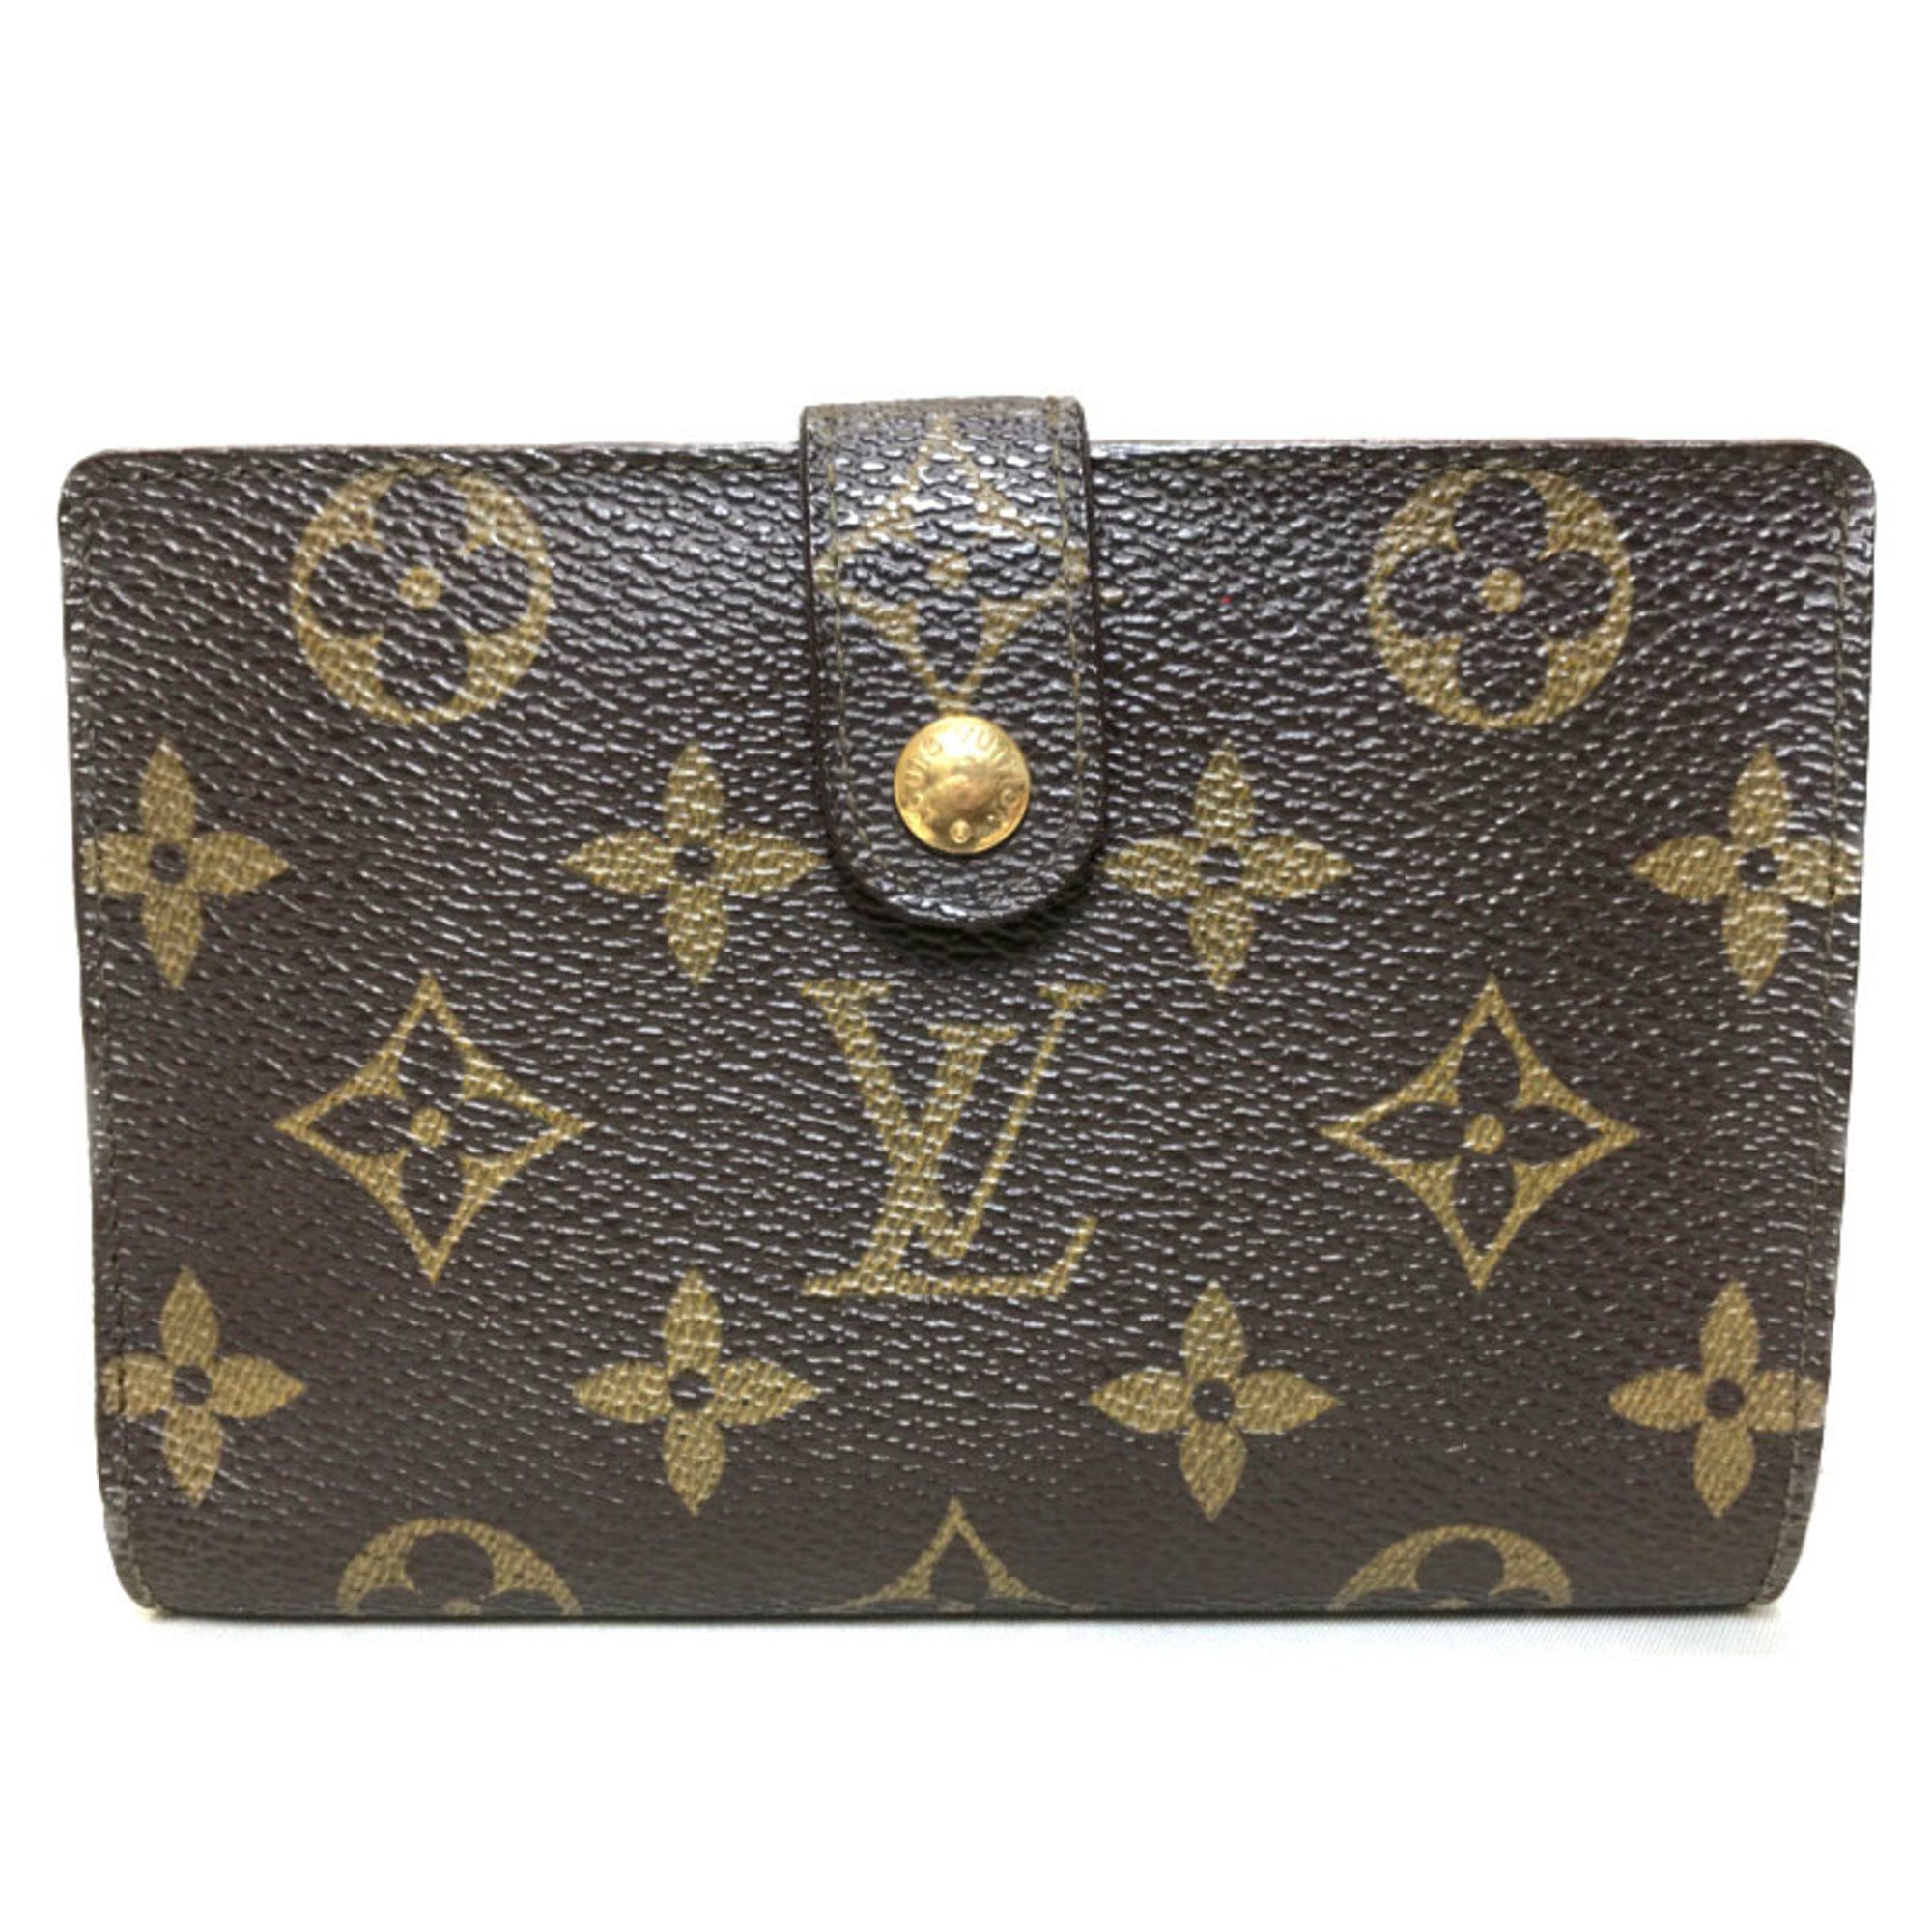 Louis Vuitton LOUIS VUITTON Monogram Wallet French Purse - Brown Canvas Leather Men's Women's